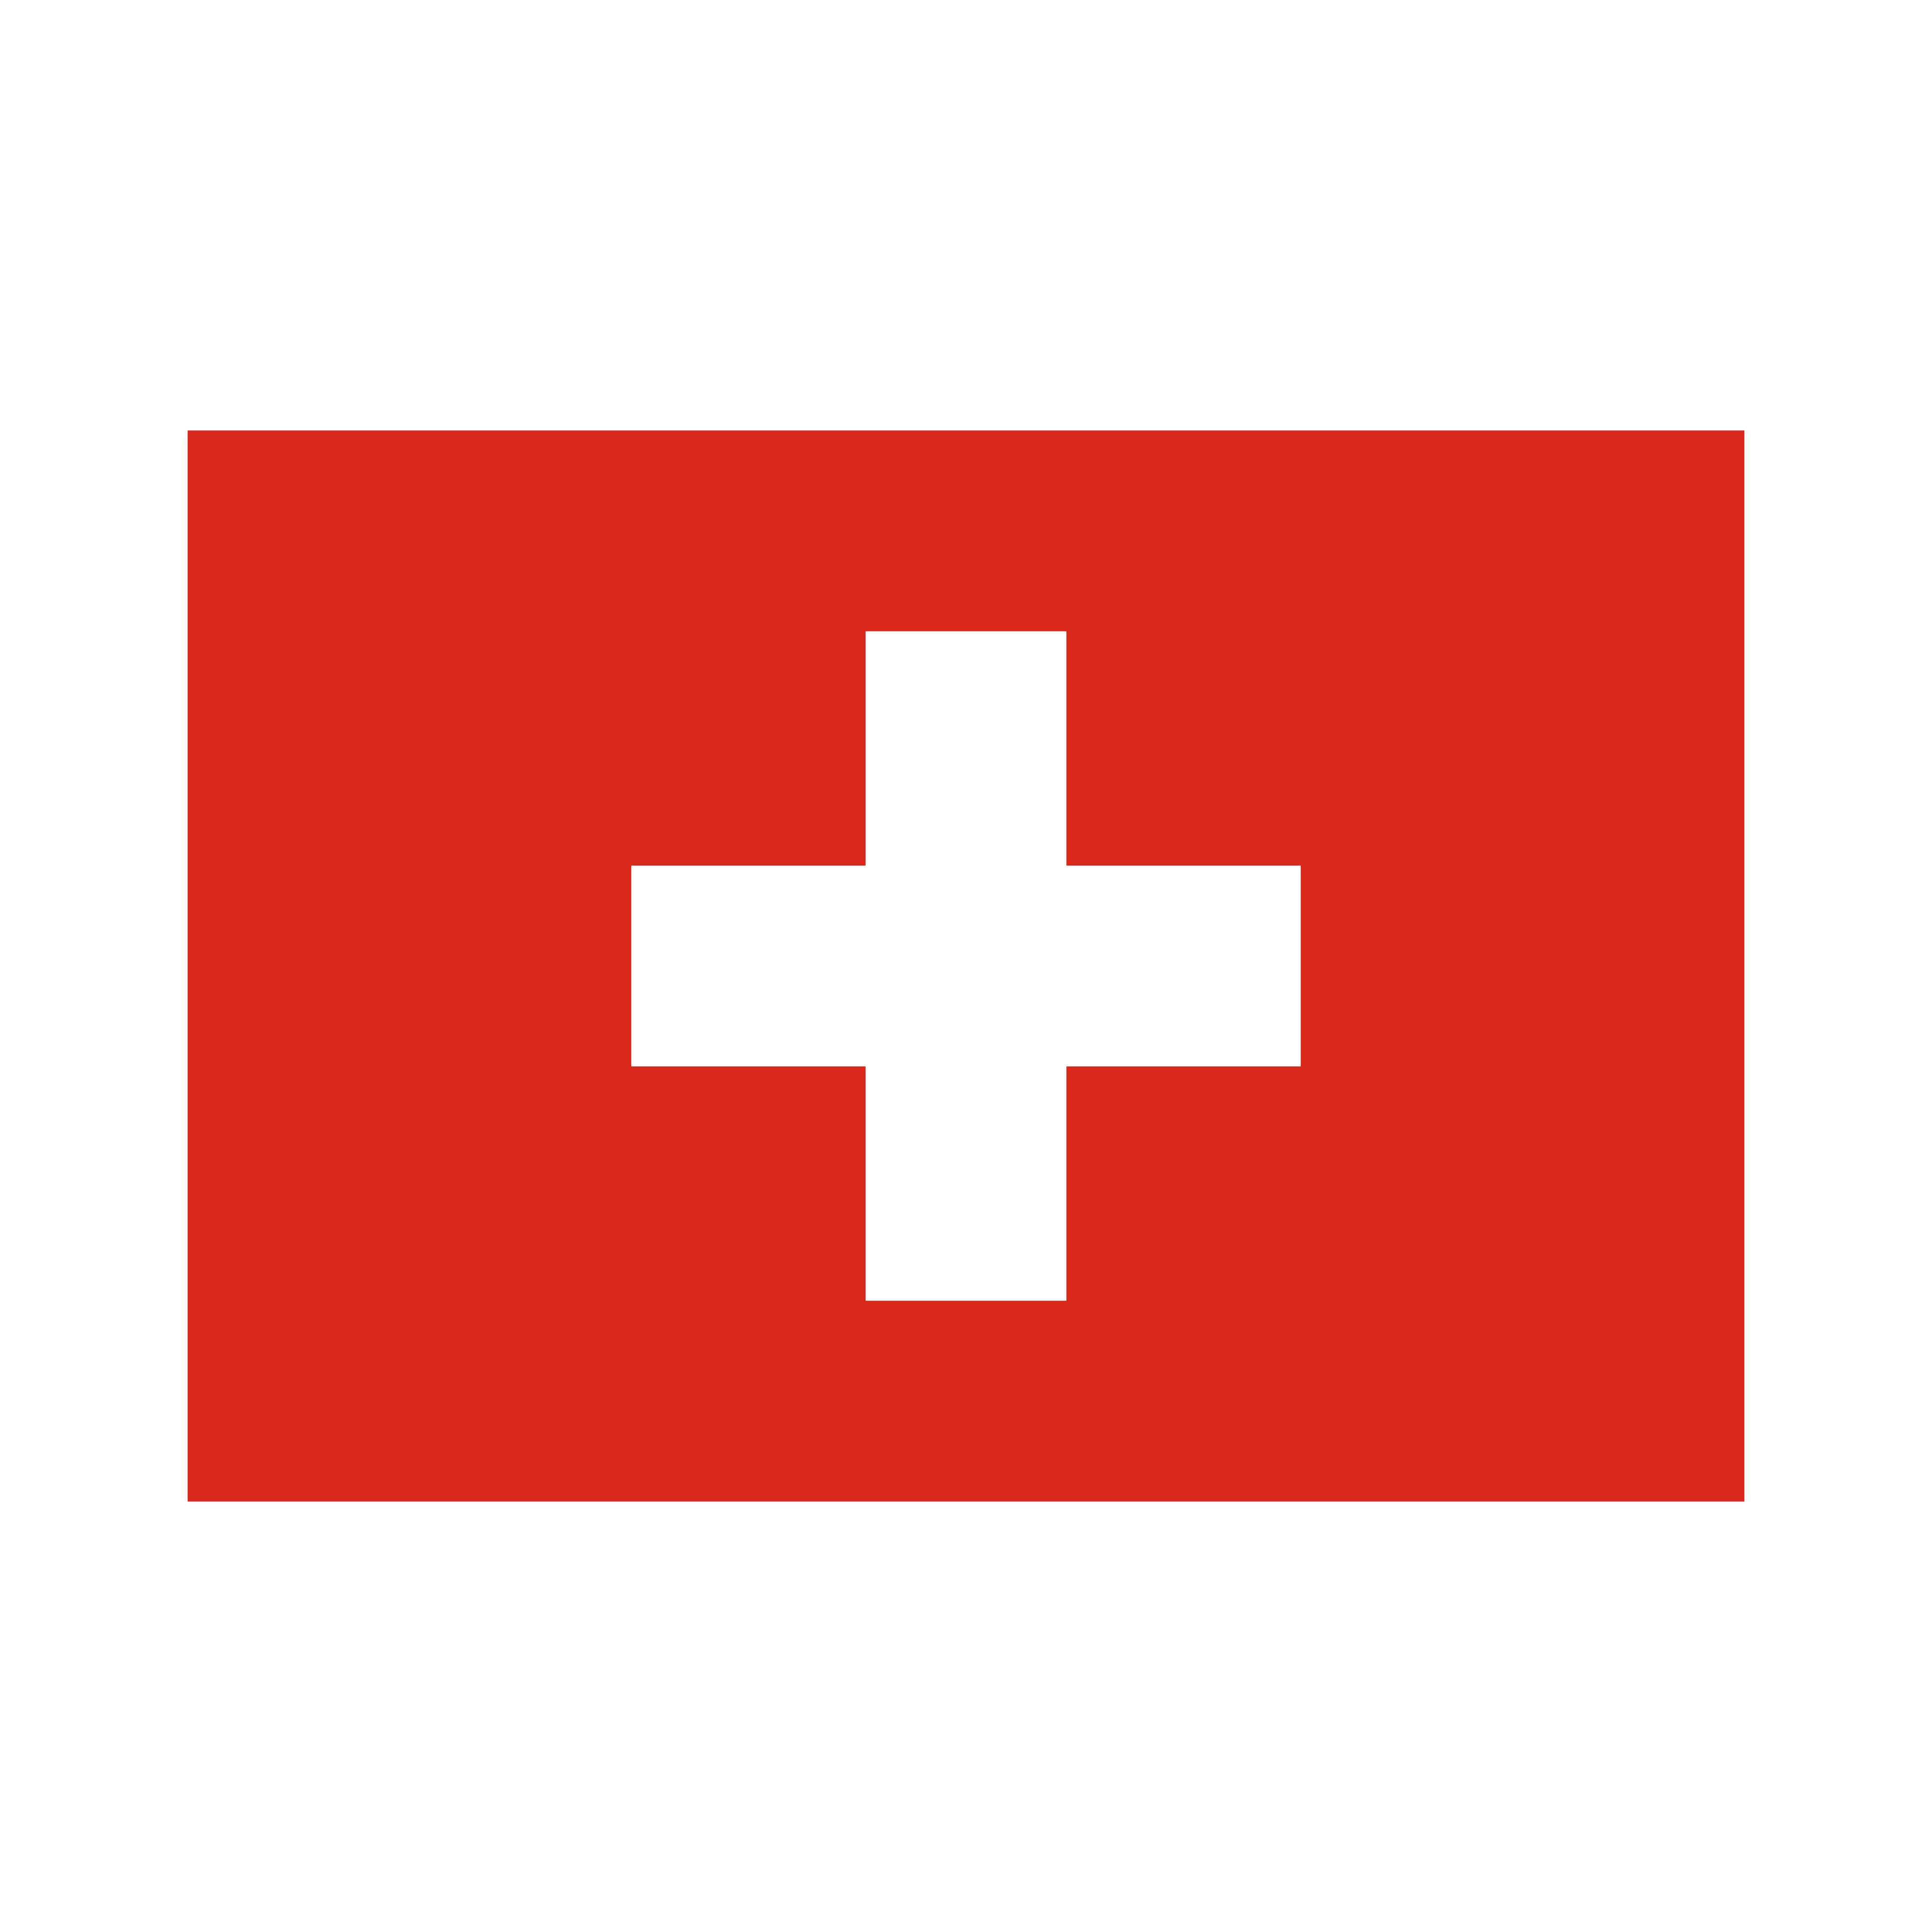 bandeira switzerland flag 0 - Flag of Switzerland